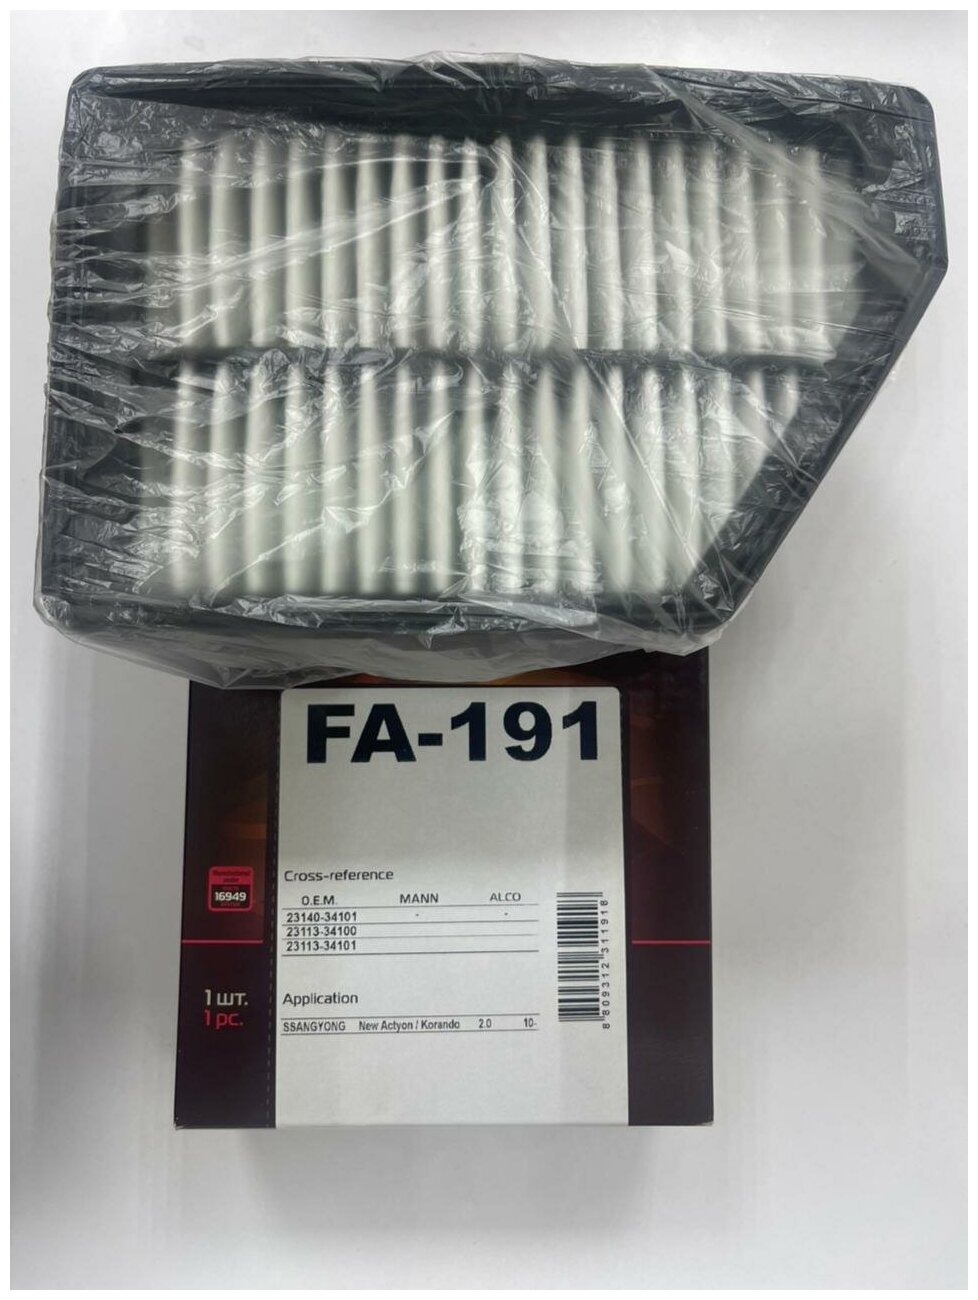 Воздушный фильтр Fortech FA-191 для Ssangyong Actyon II, New Actyon/Korando (CK) 2.0 бензин/дизель с 2010 г. в. OEM 23140-34101